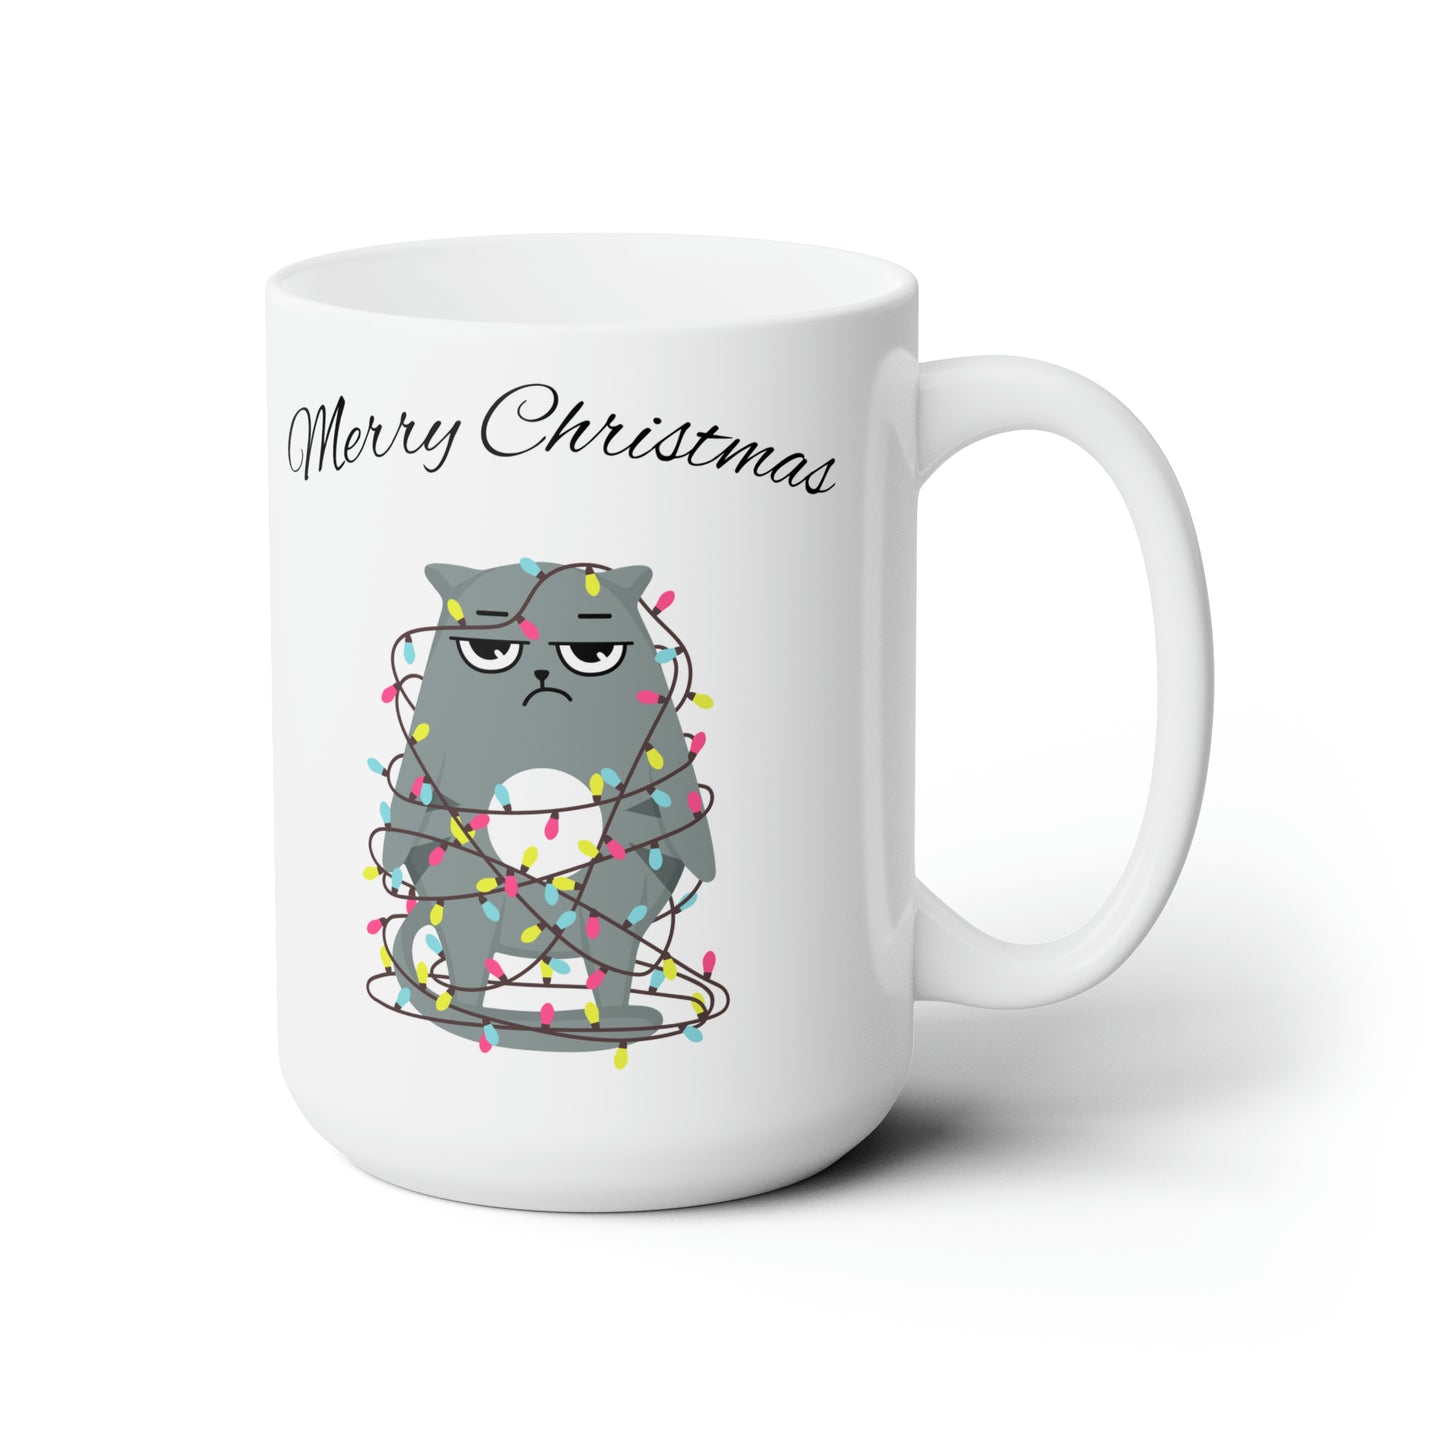 Merry Christmas Ceramic Mug 15oz, White